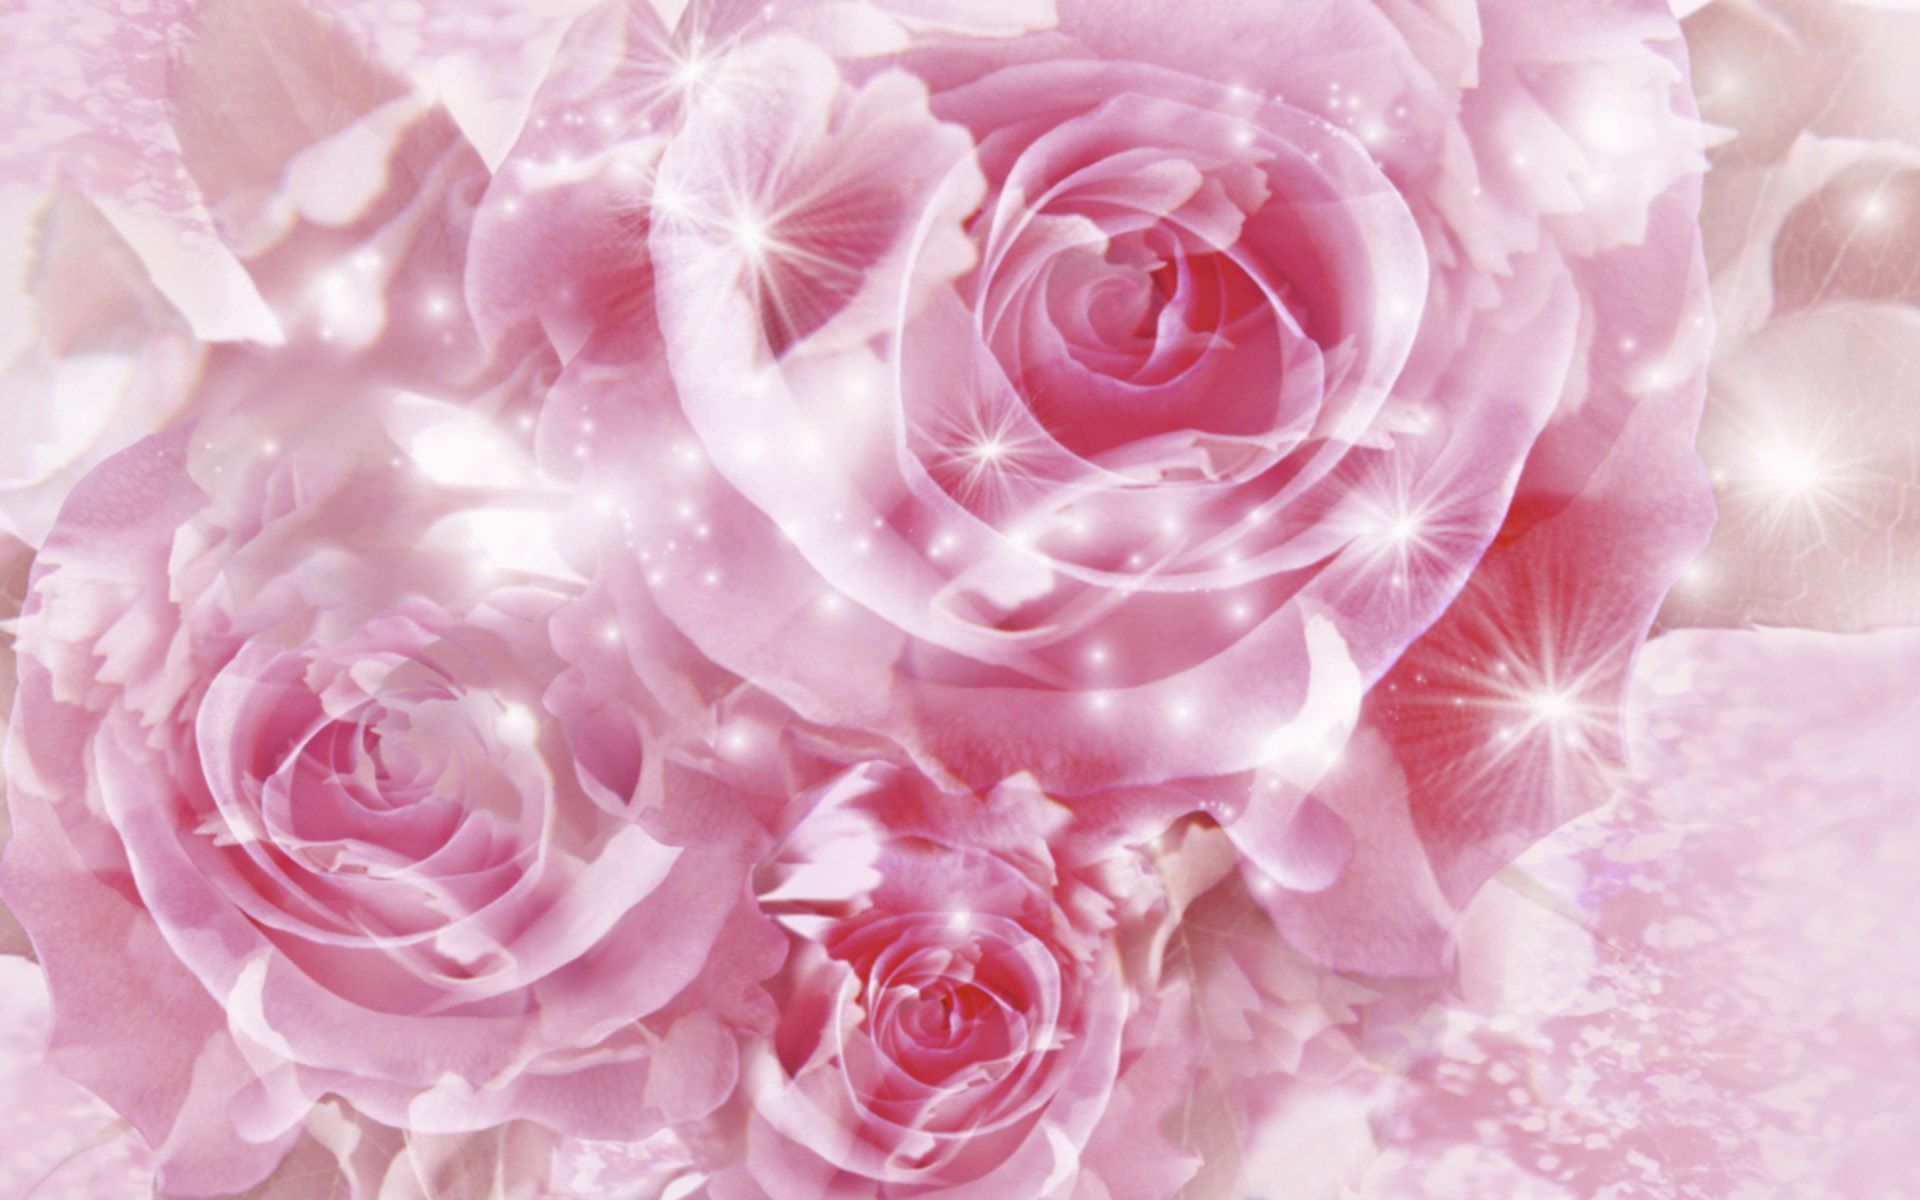 Pretty Pink Roses - Roses Wallpaper 34610924 - Fanpop